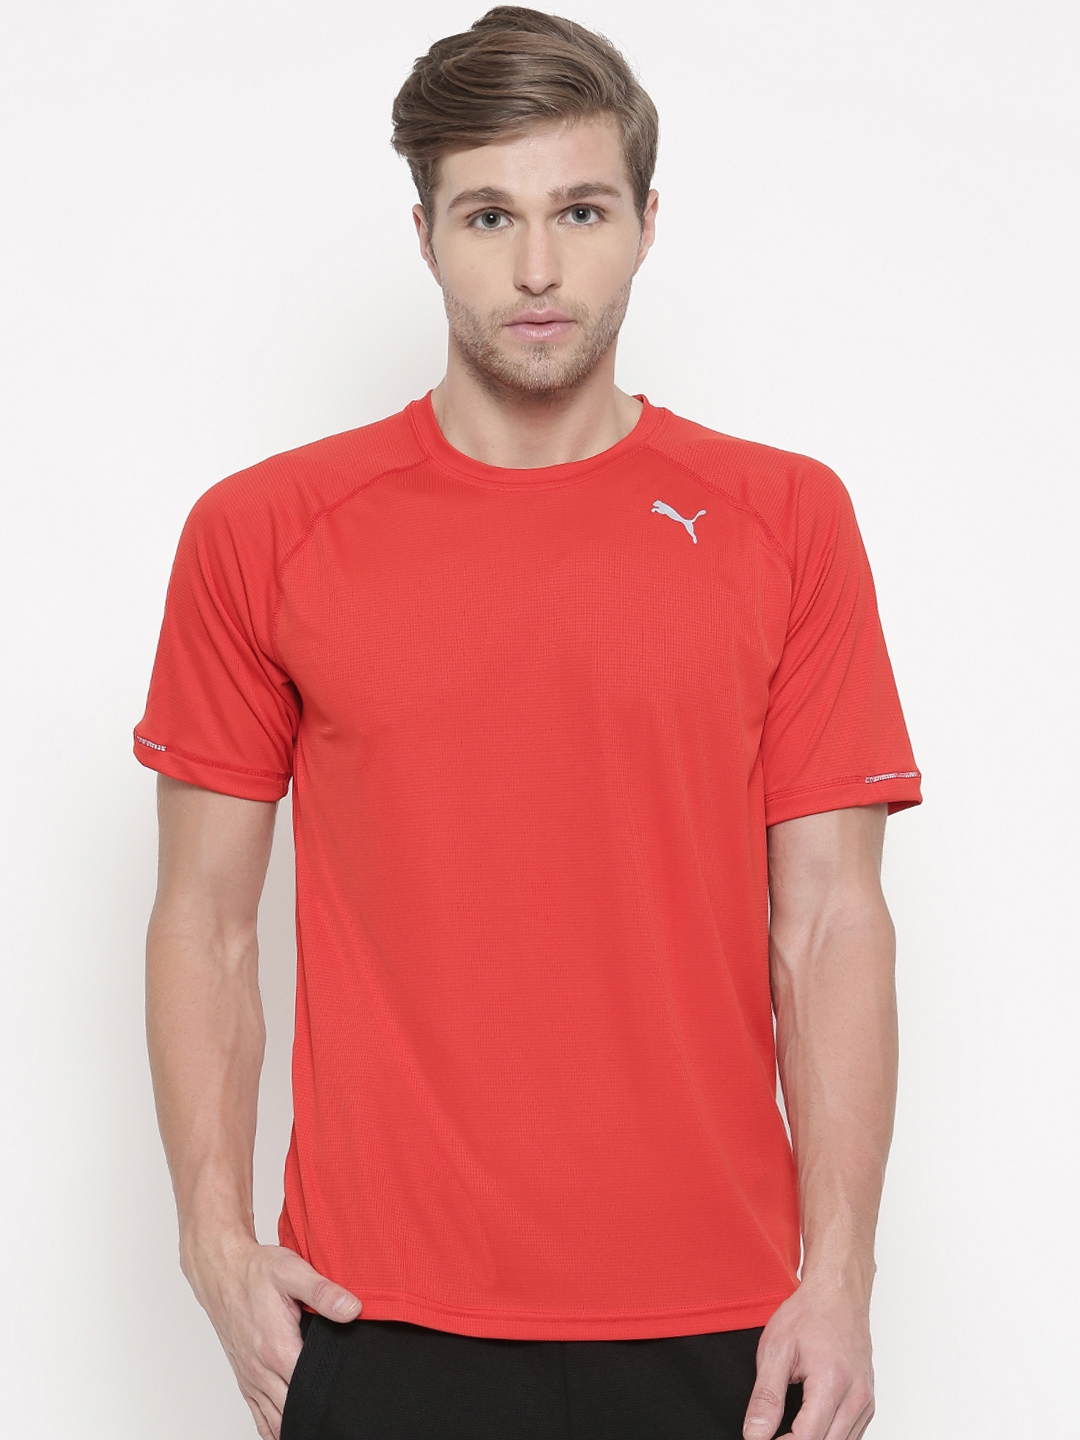 Buy Puma Men Red Core Run S S Tee T Shirt - Tshirts for Men 2445614 ...